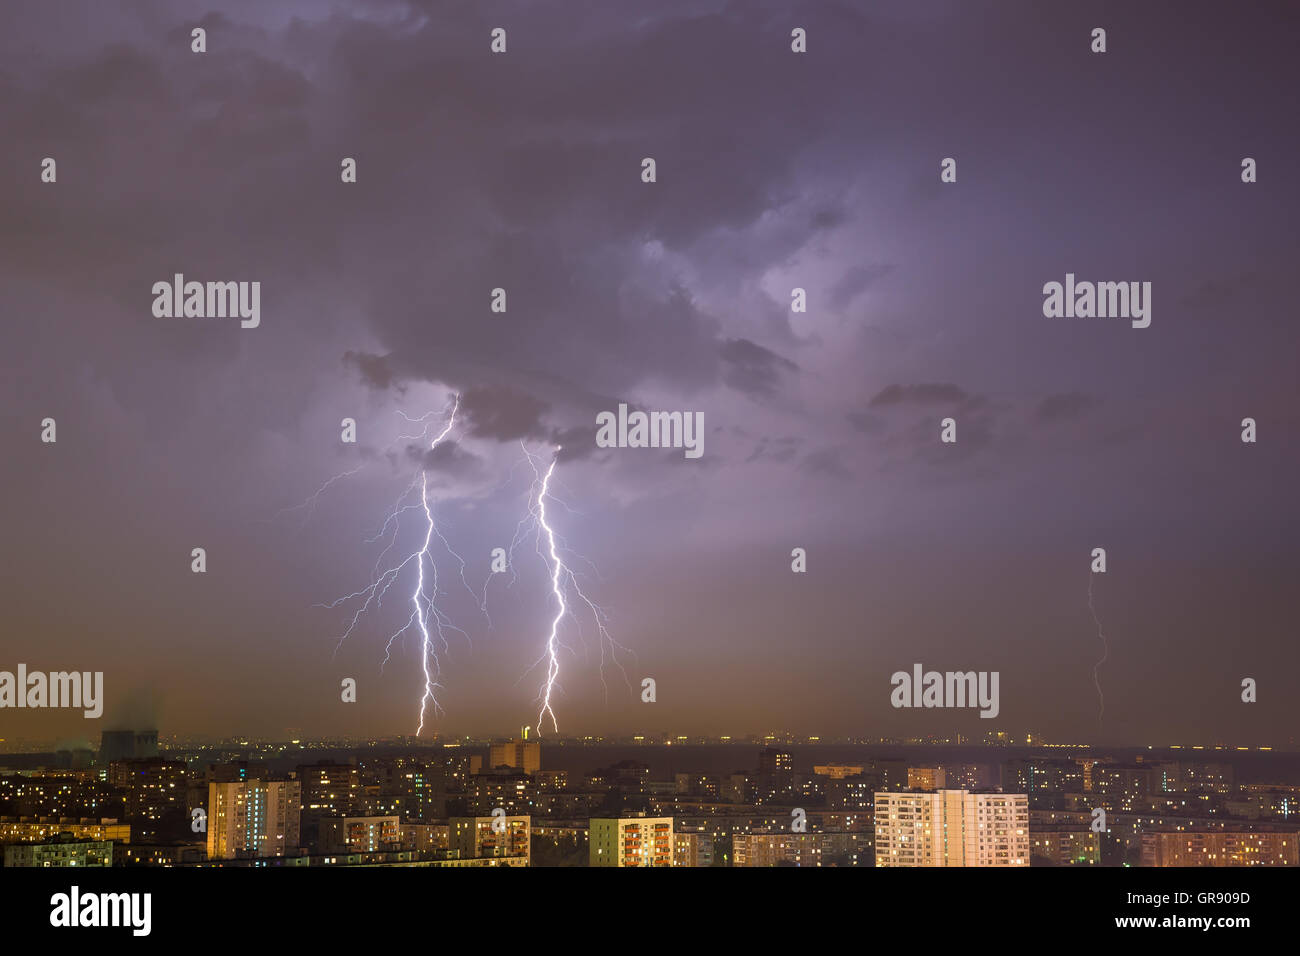 Colpo di fulmine over night city. Mosca, Russia. Foto Stock